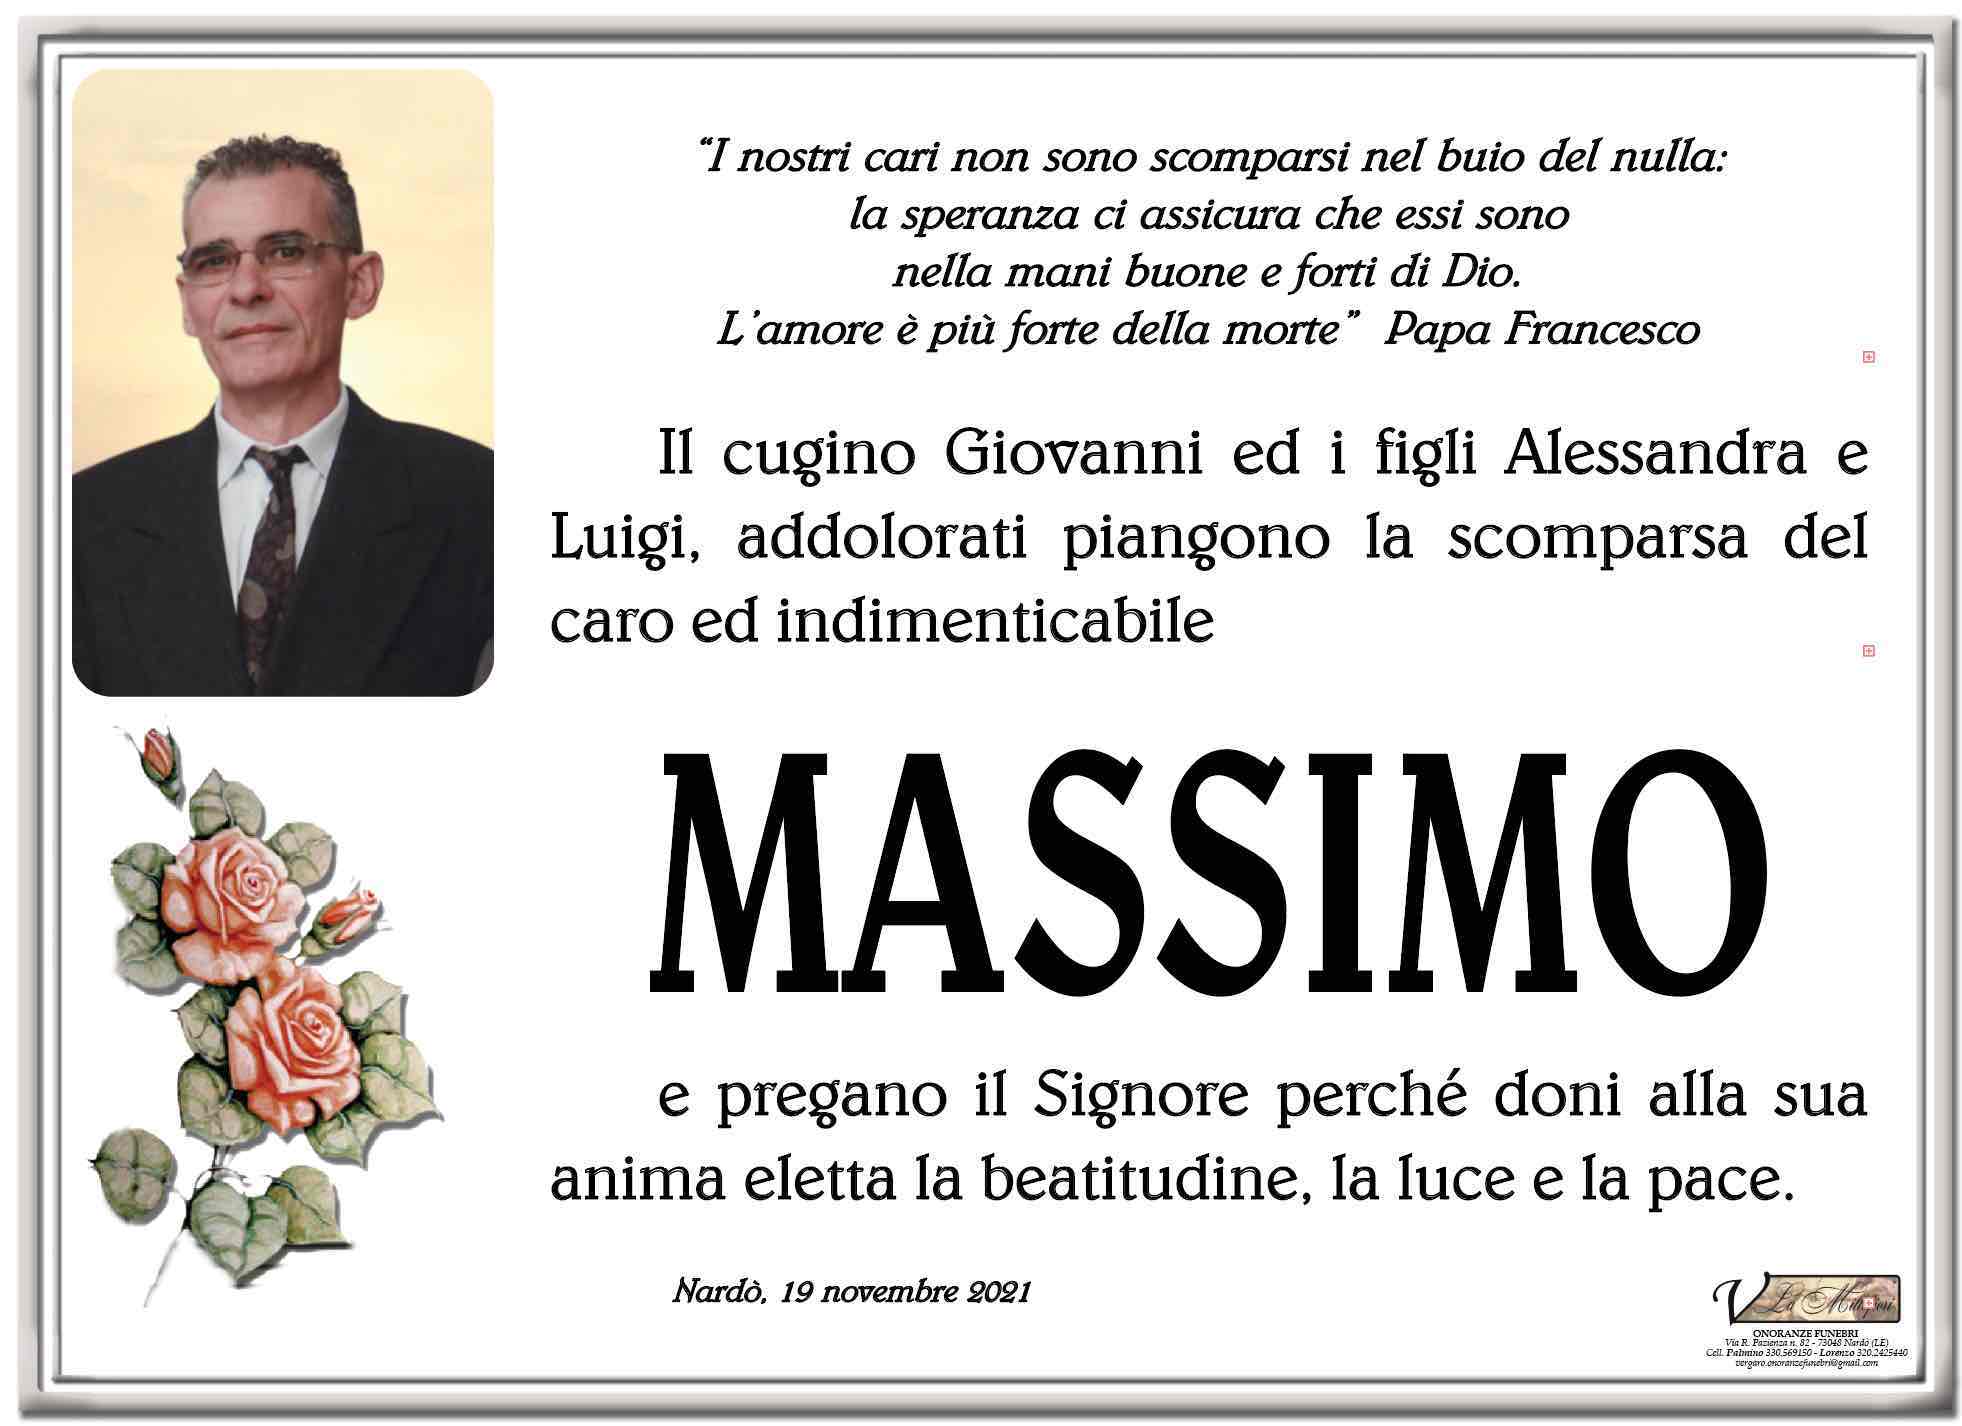 Massimo Margarito